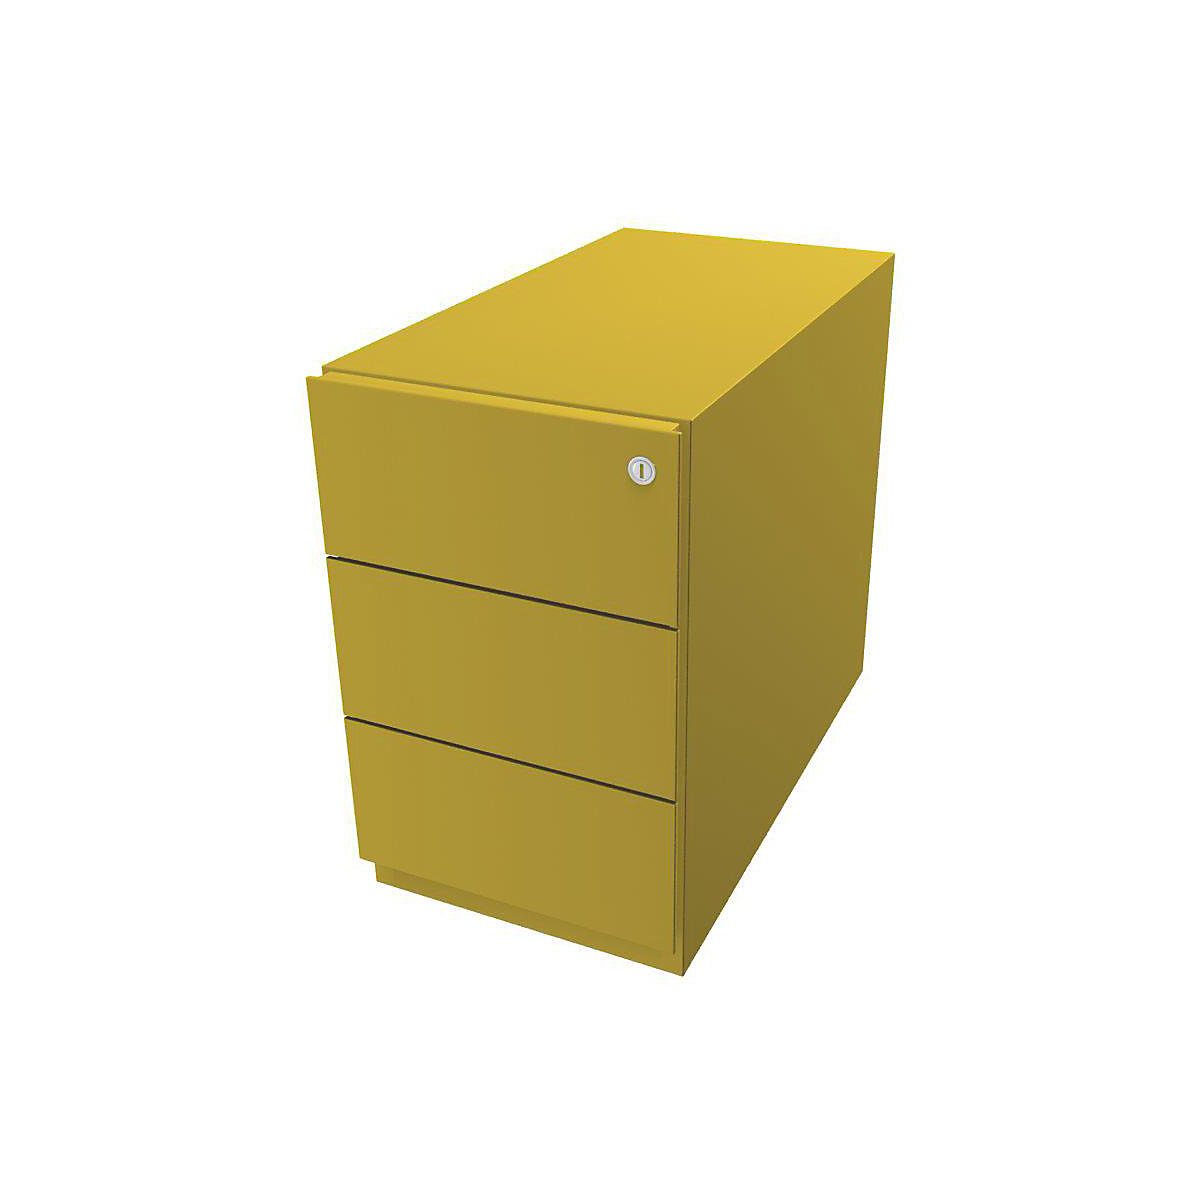 Pojazdný kontajner Note™, s 3 univerzálnymi zásuvkami – BISLEY, v x š x h 495 x 300 x 565 mm, s úchopnou lištou, žltá-1